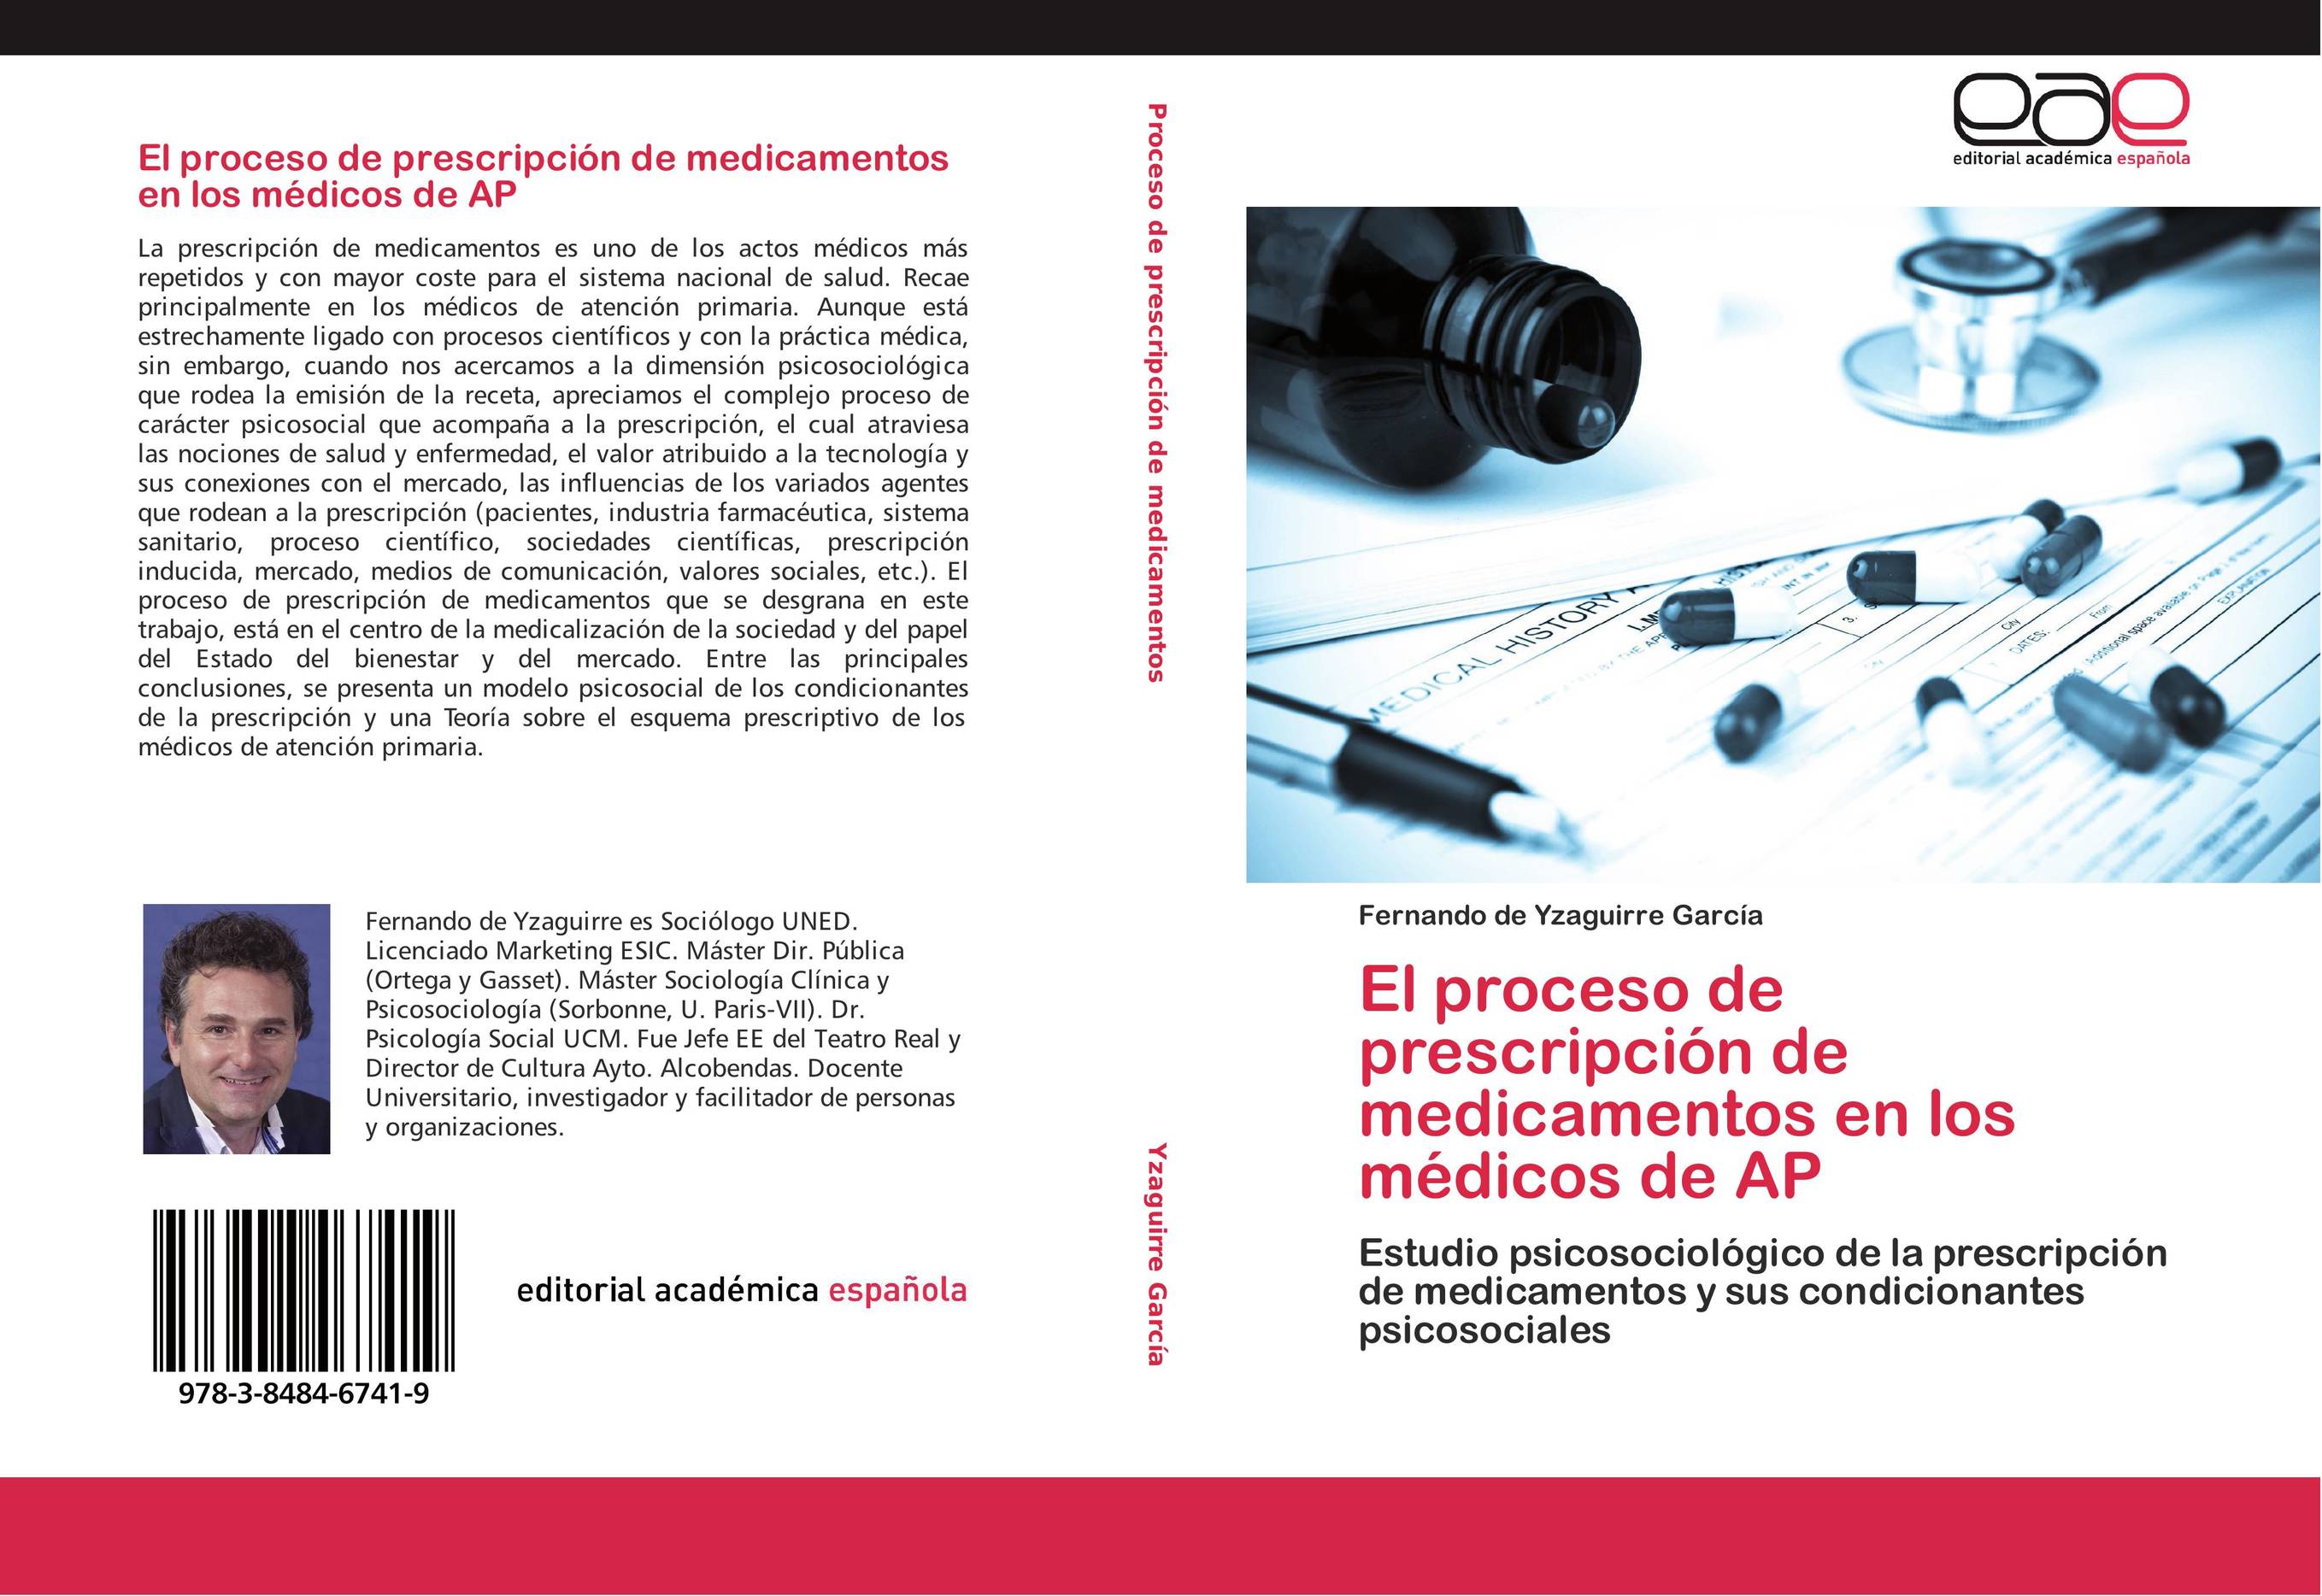 El proceso de prescripción de medicamentos en los médicos de AP